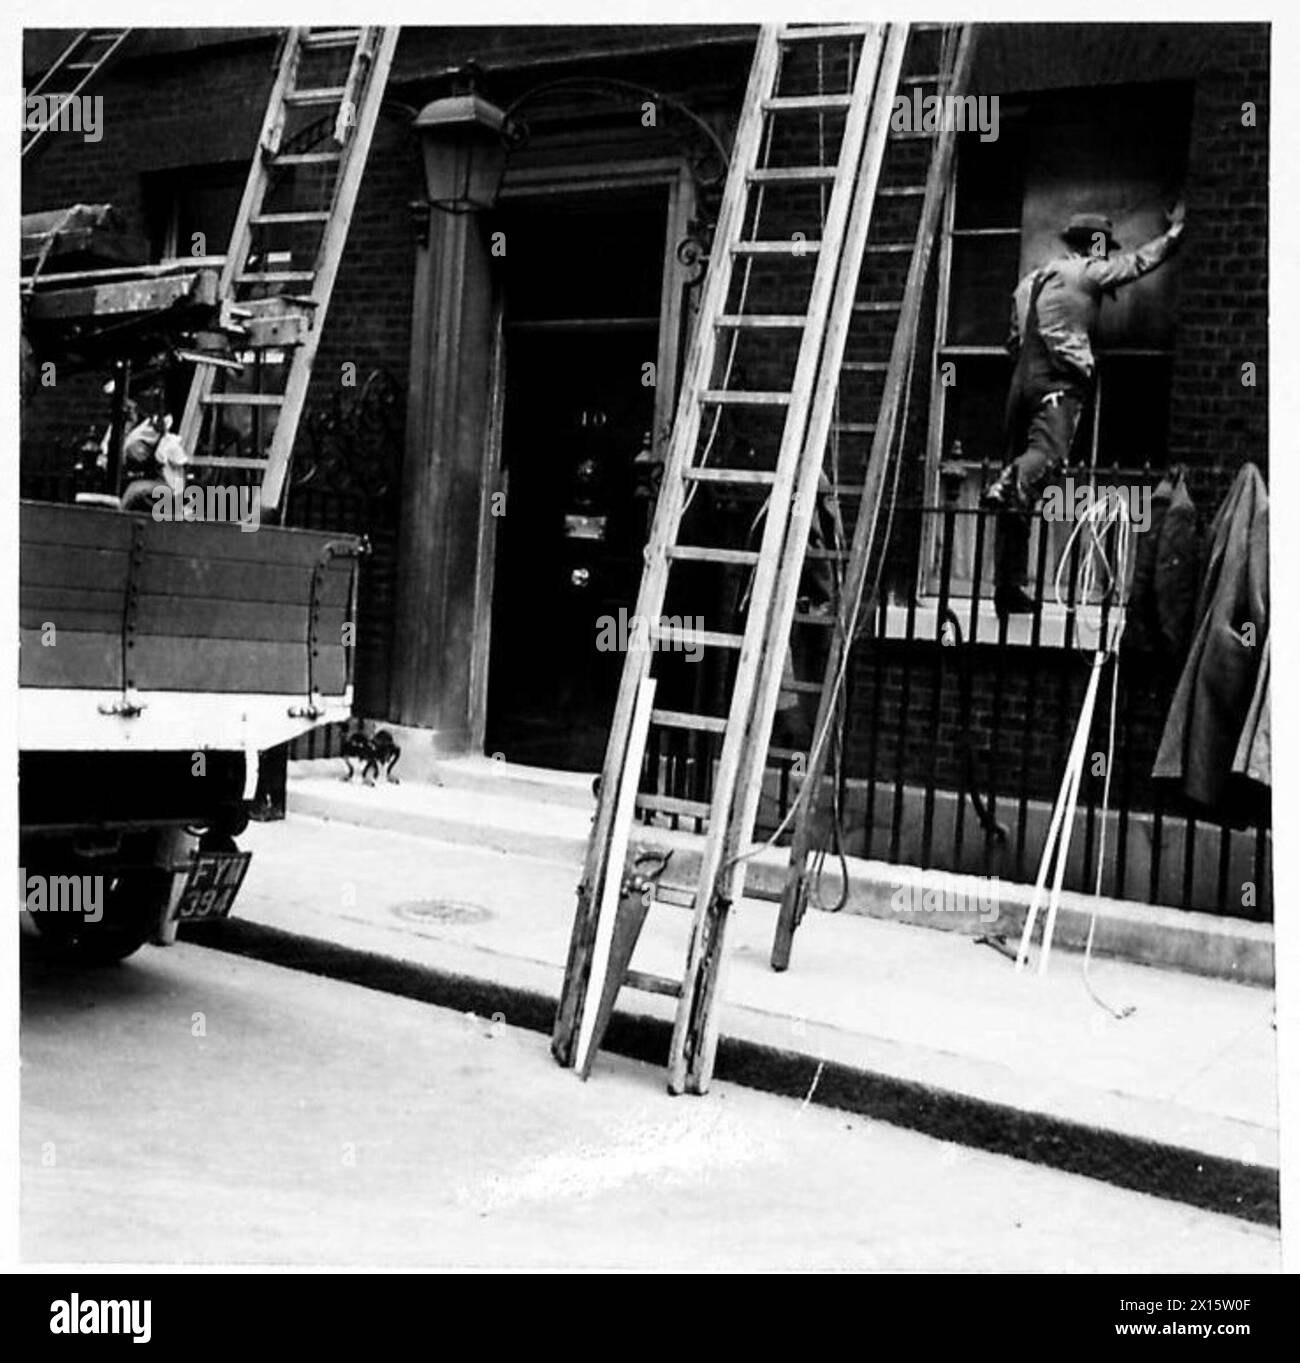 NO.10 DOWNING STREET WURDE WÄHREND DES RAID BESCHÄDIGT - eine geschäftige Szene in der Downing Street, als Arbeiter Leitern hochklettern, um die beschädigten Fenster in der No.10 British Army zu reparieren Stockfoto